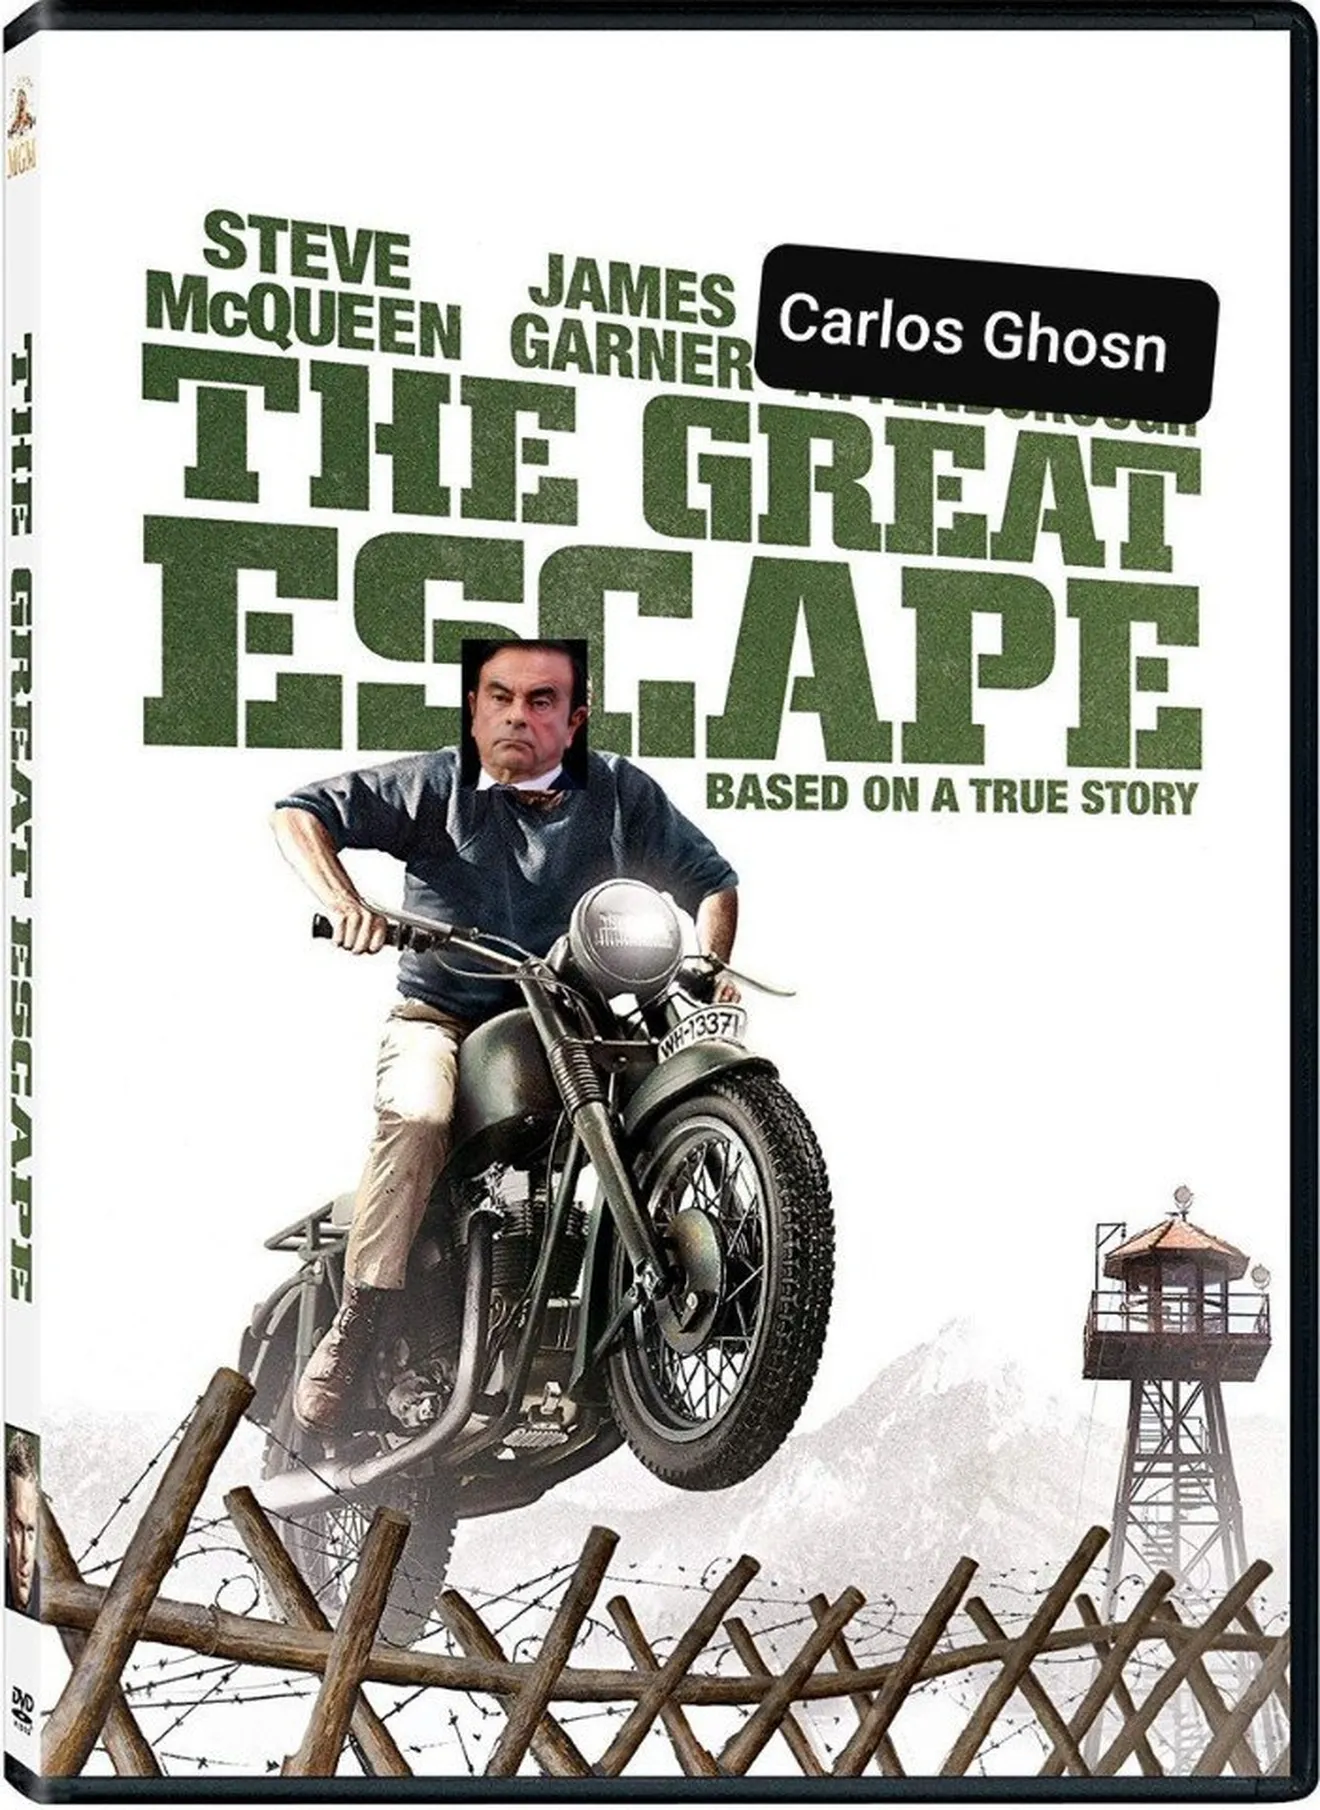 La fuga de Carlos Ghosn de Japón fue "de película"